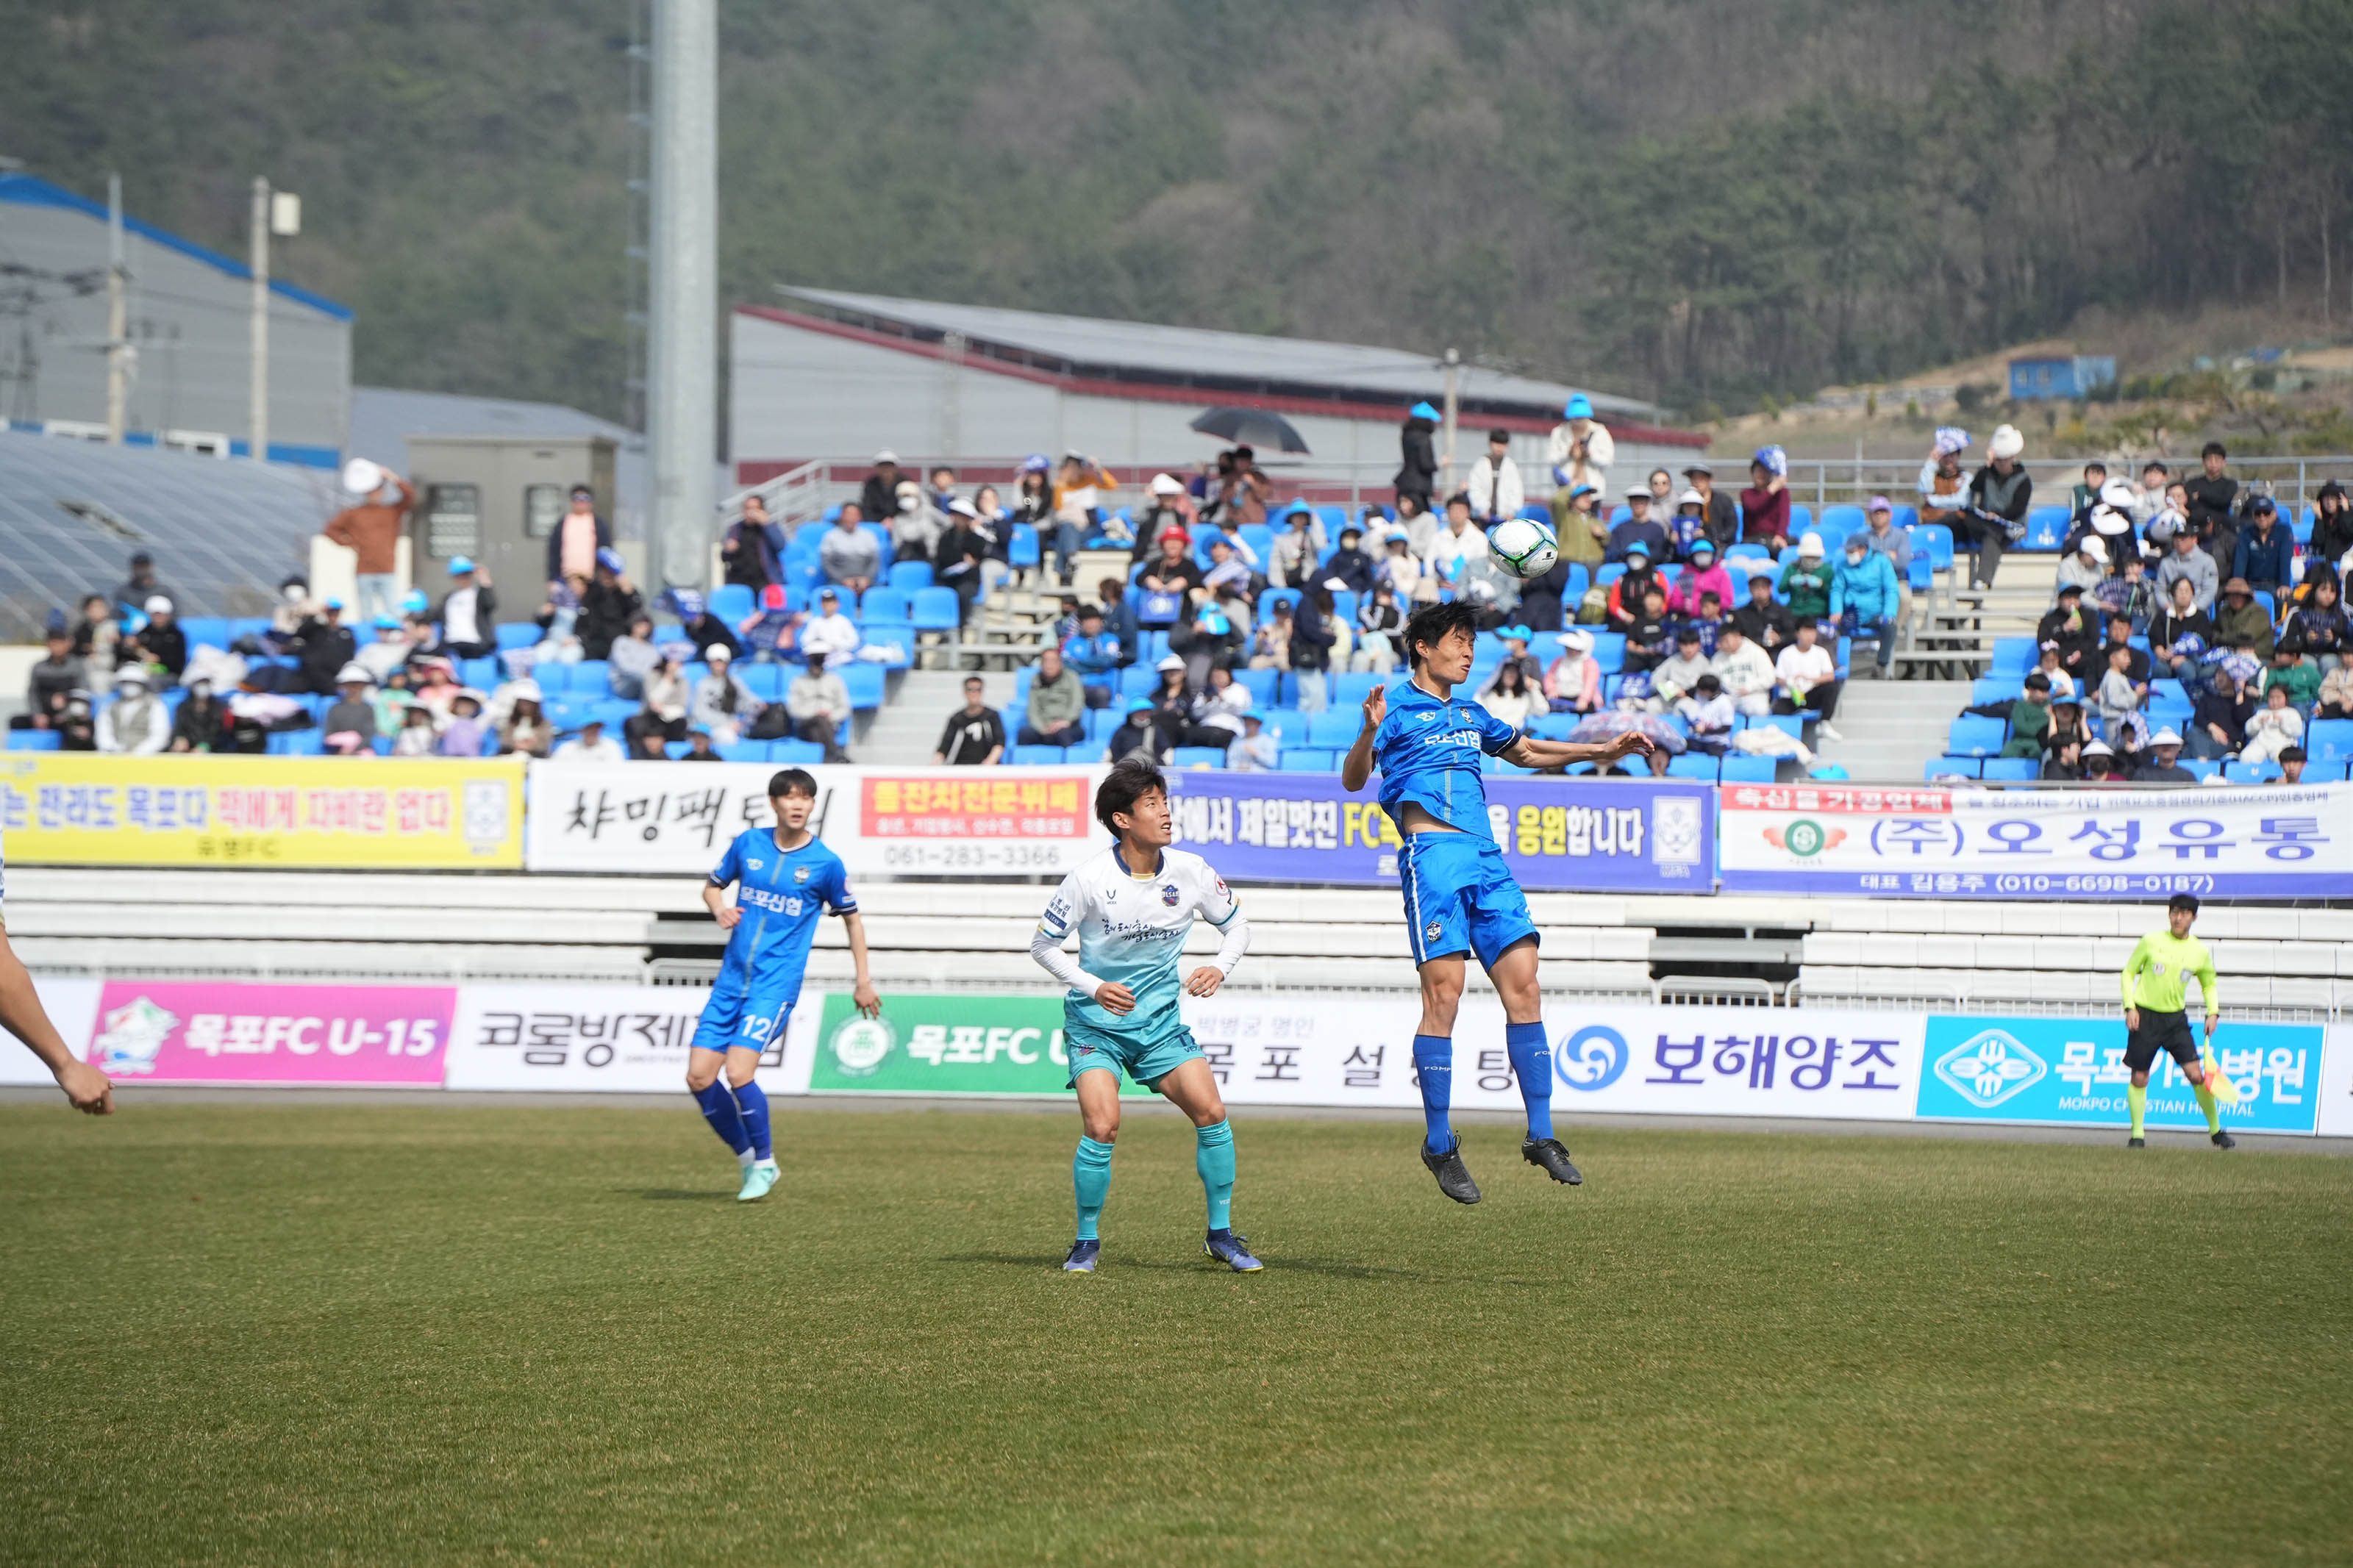 축구경기 모습 중 찍힌 사진. 세명의 선수들과 한명의 심판이 있고, 파란색 유니폼을 입은 선수가 헤딩하는 순간을 포착한 사진.